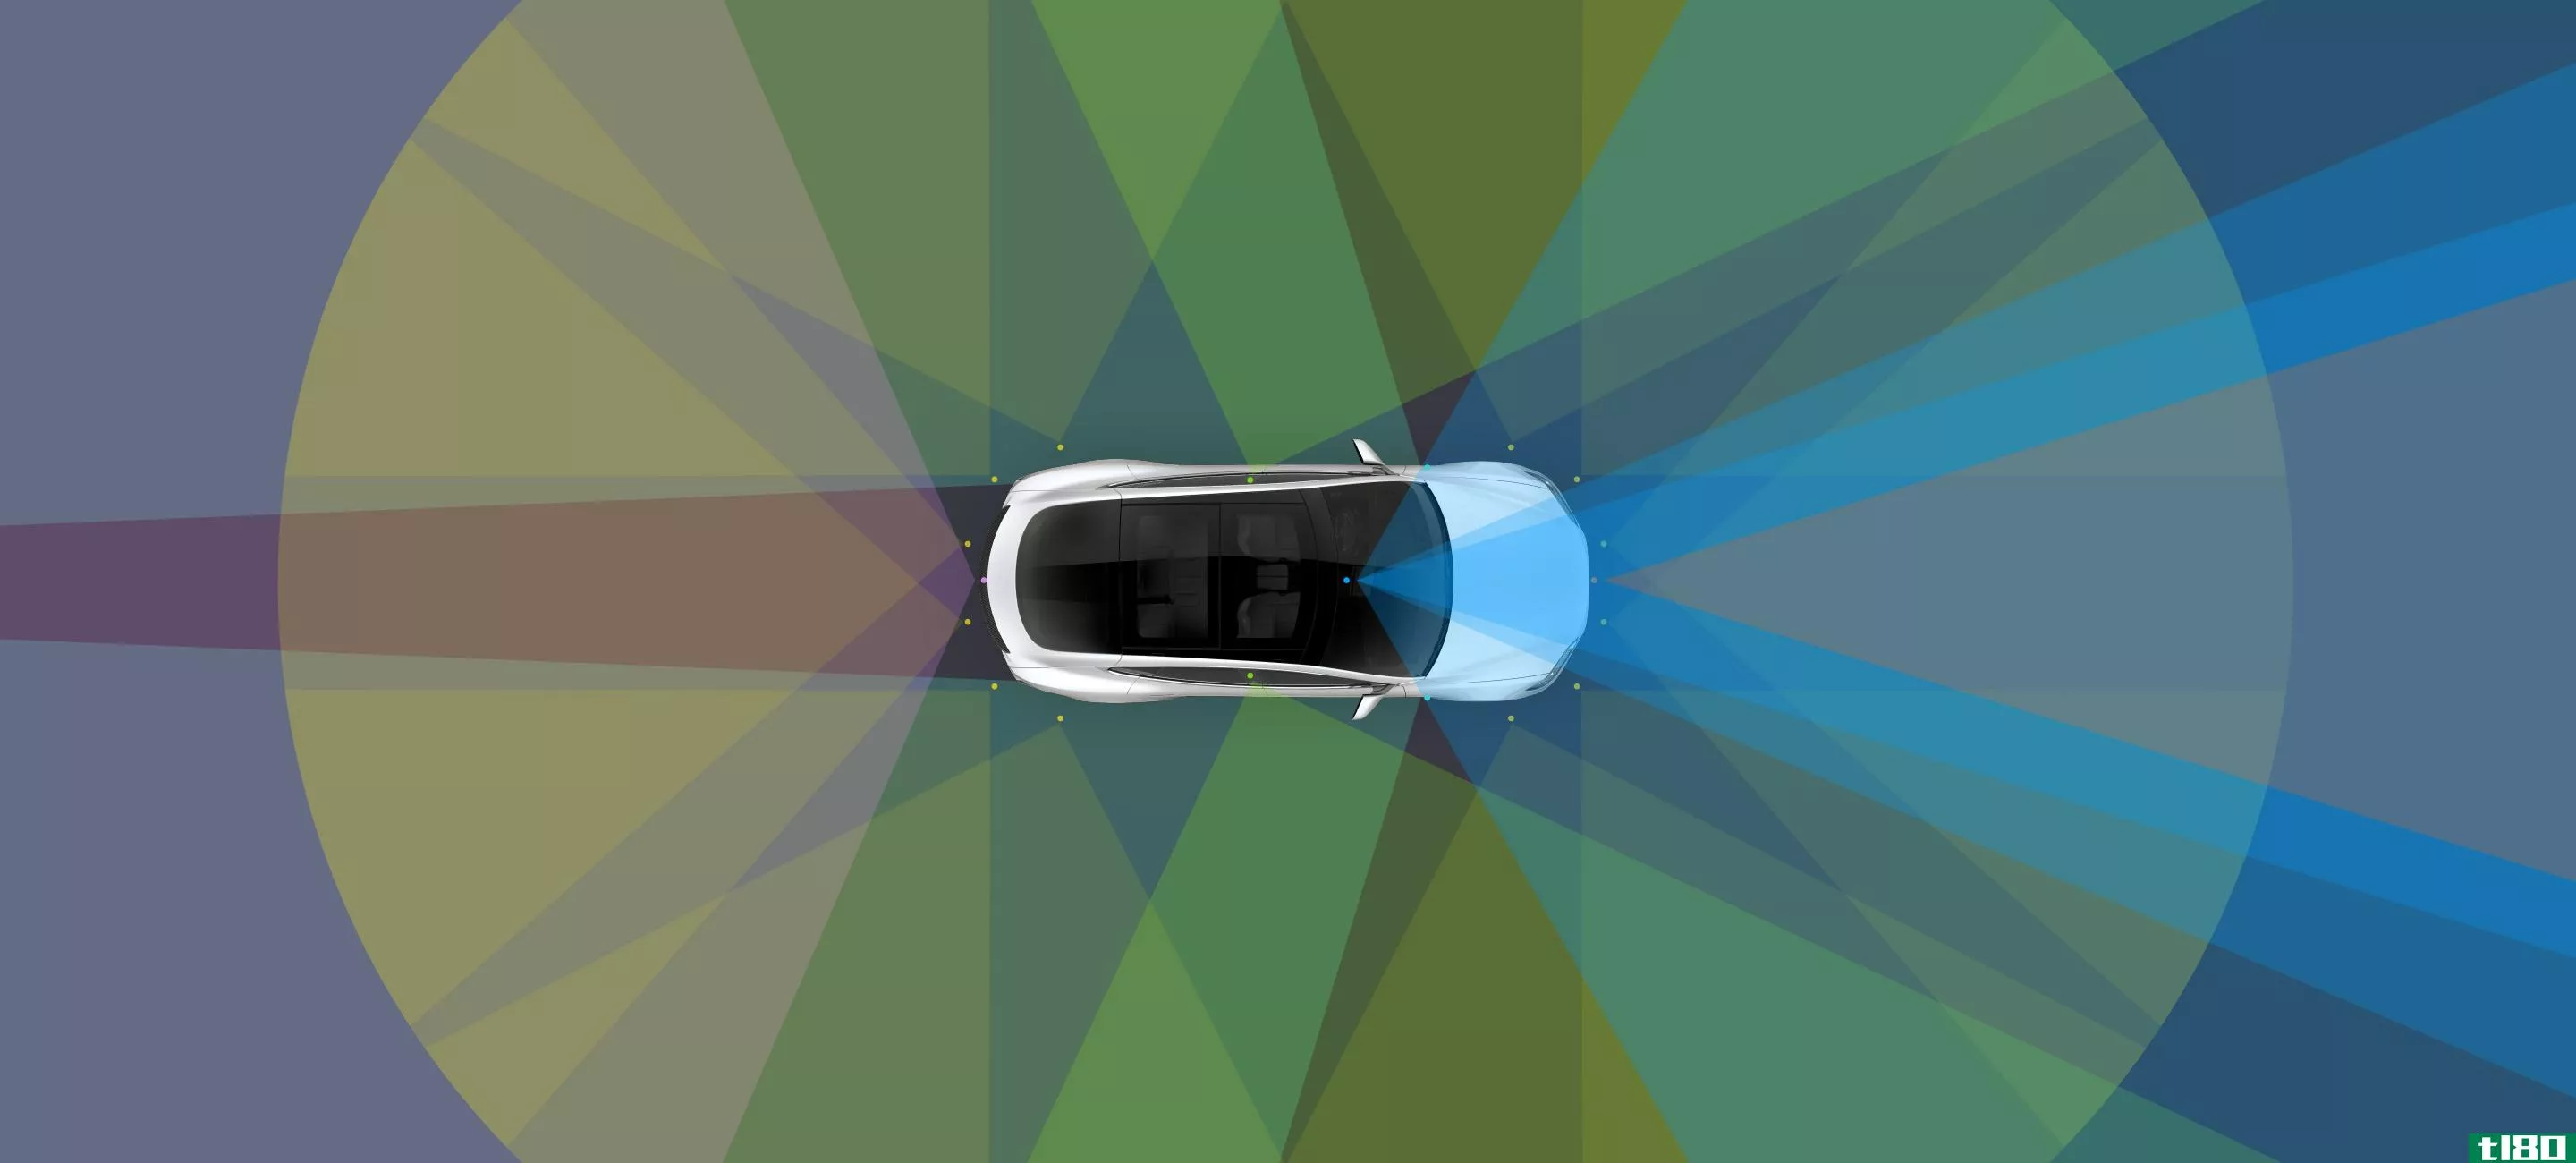 特斯拉的最新更新将自动驾驶仪限制在不分隔道路上的限速范围内